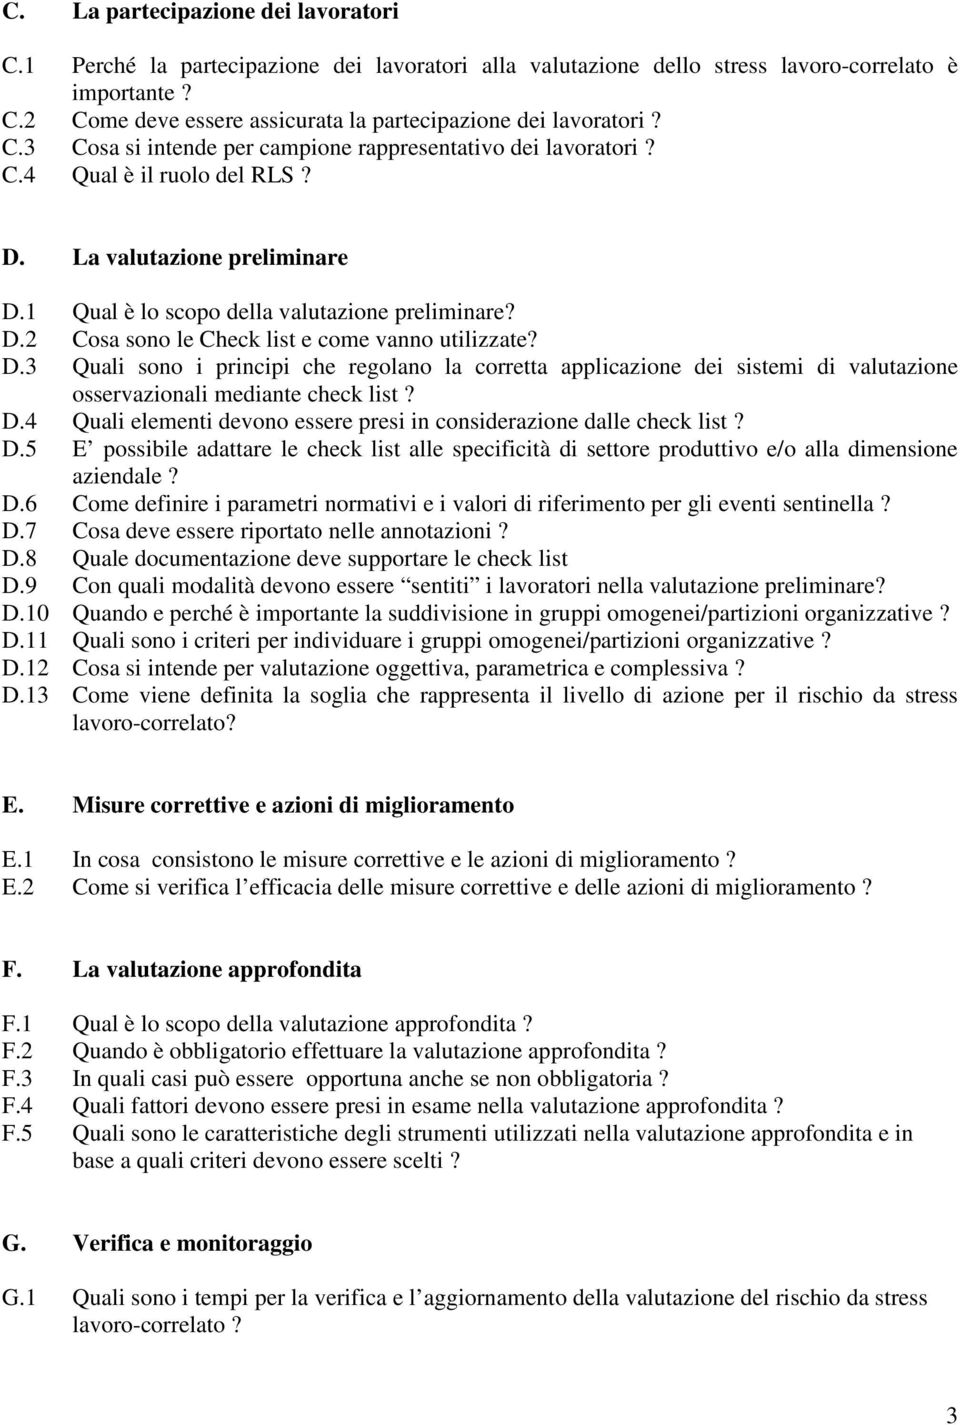 D.3 Quali sono i principi che regolano la corretta applicazione dei sistemi di valutazione osservazionali mediante check list? D.